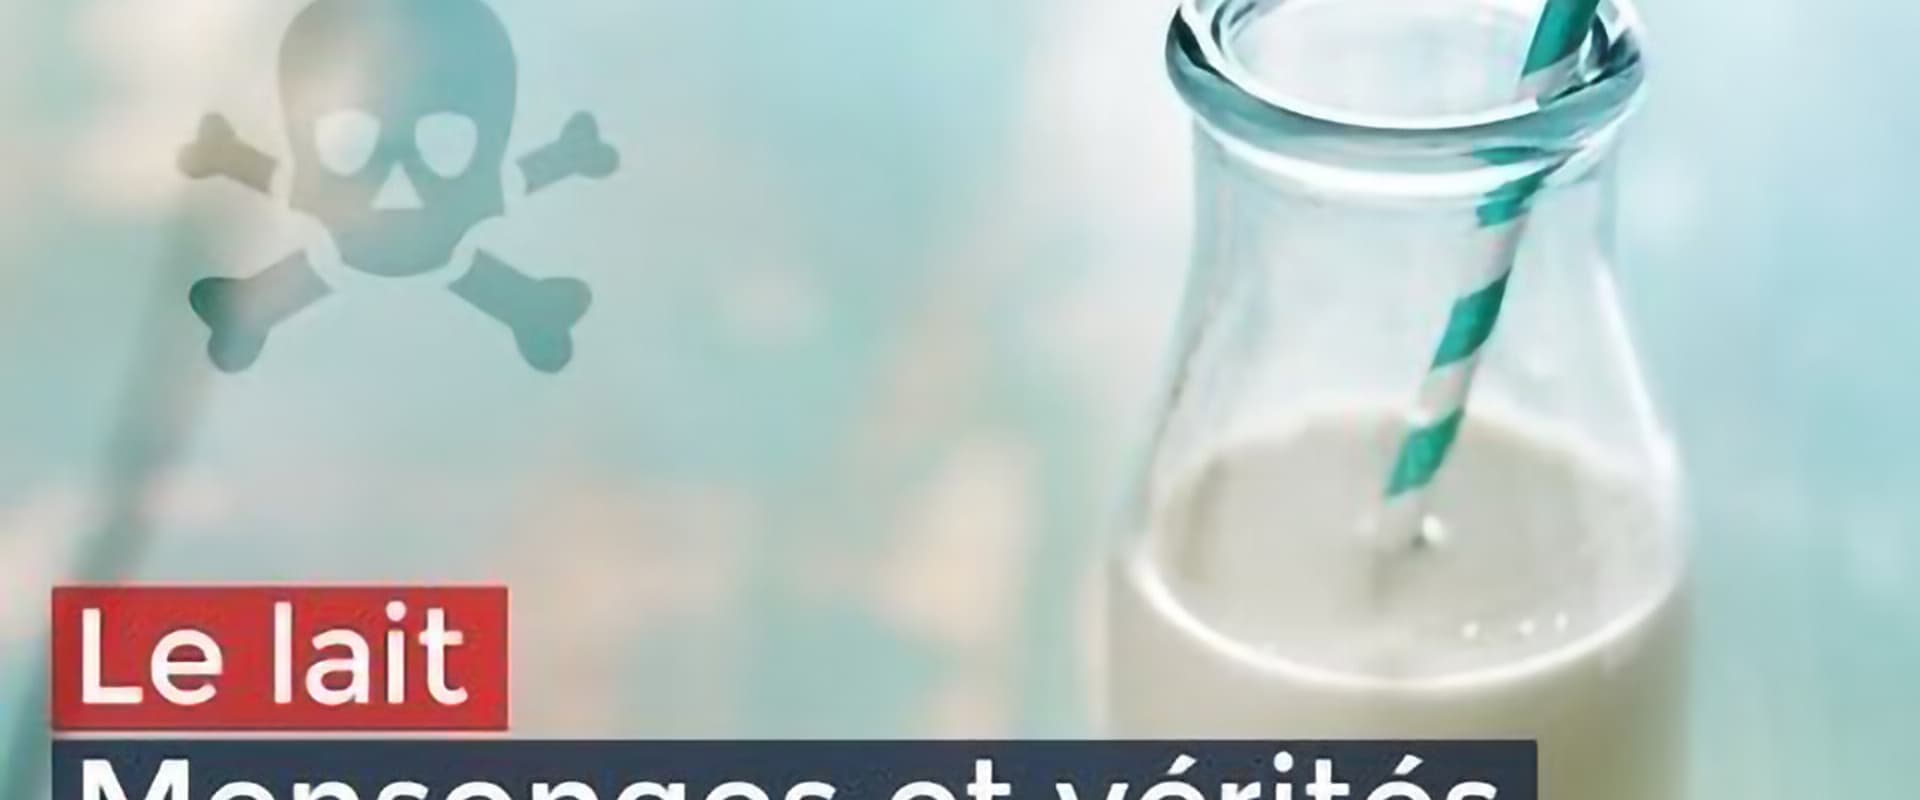 Milk: Facts, Figures and Beliefs